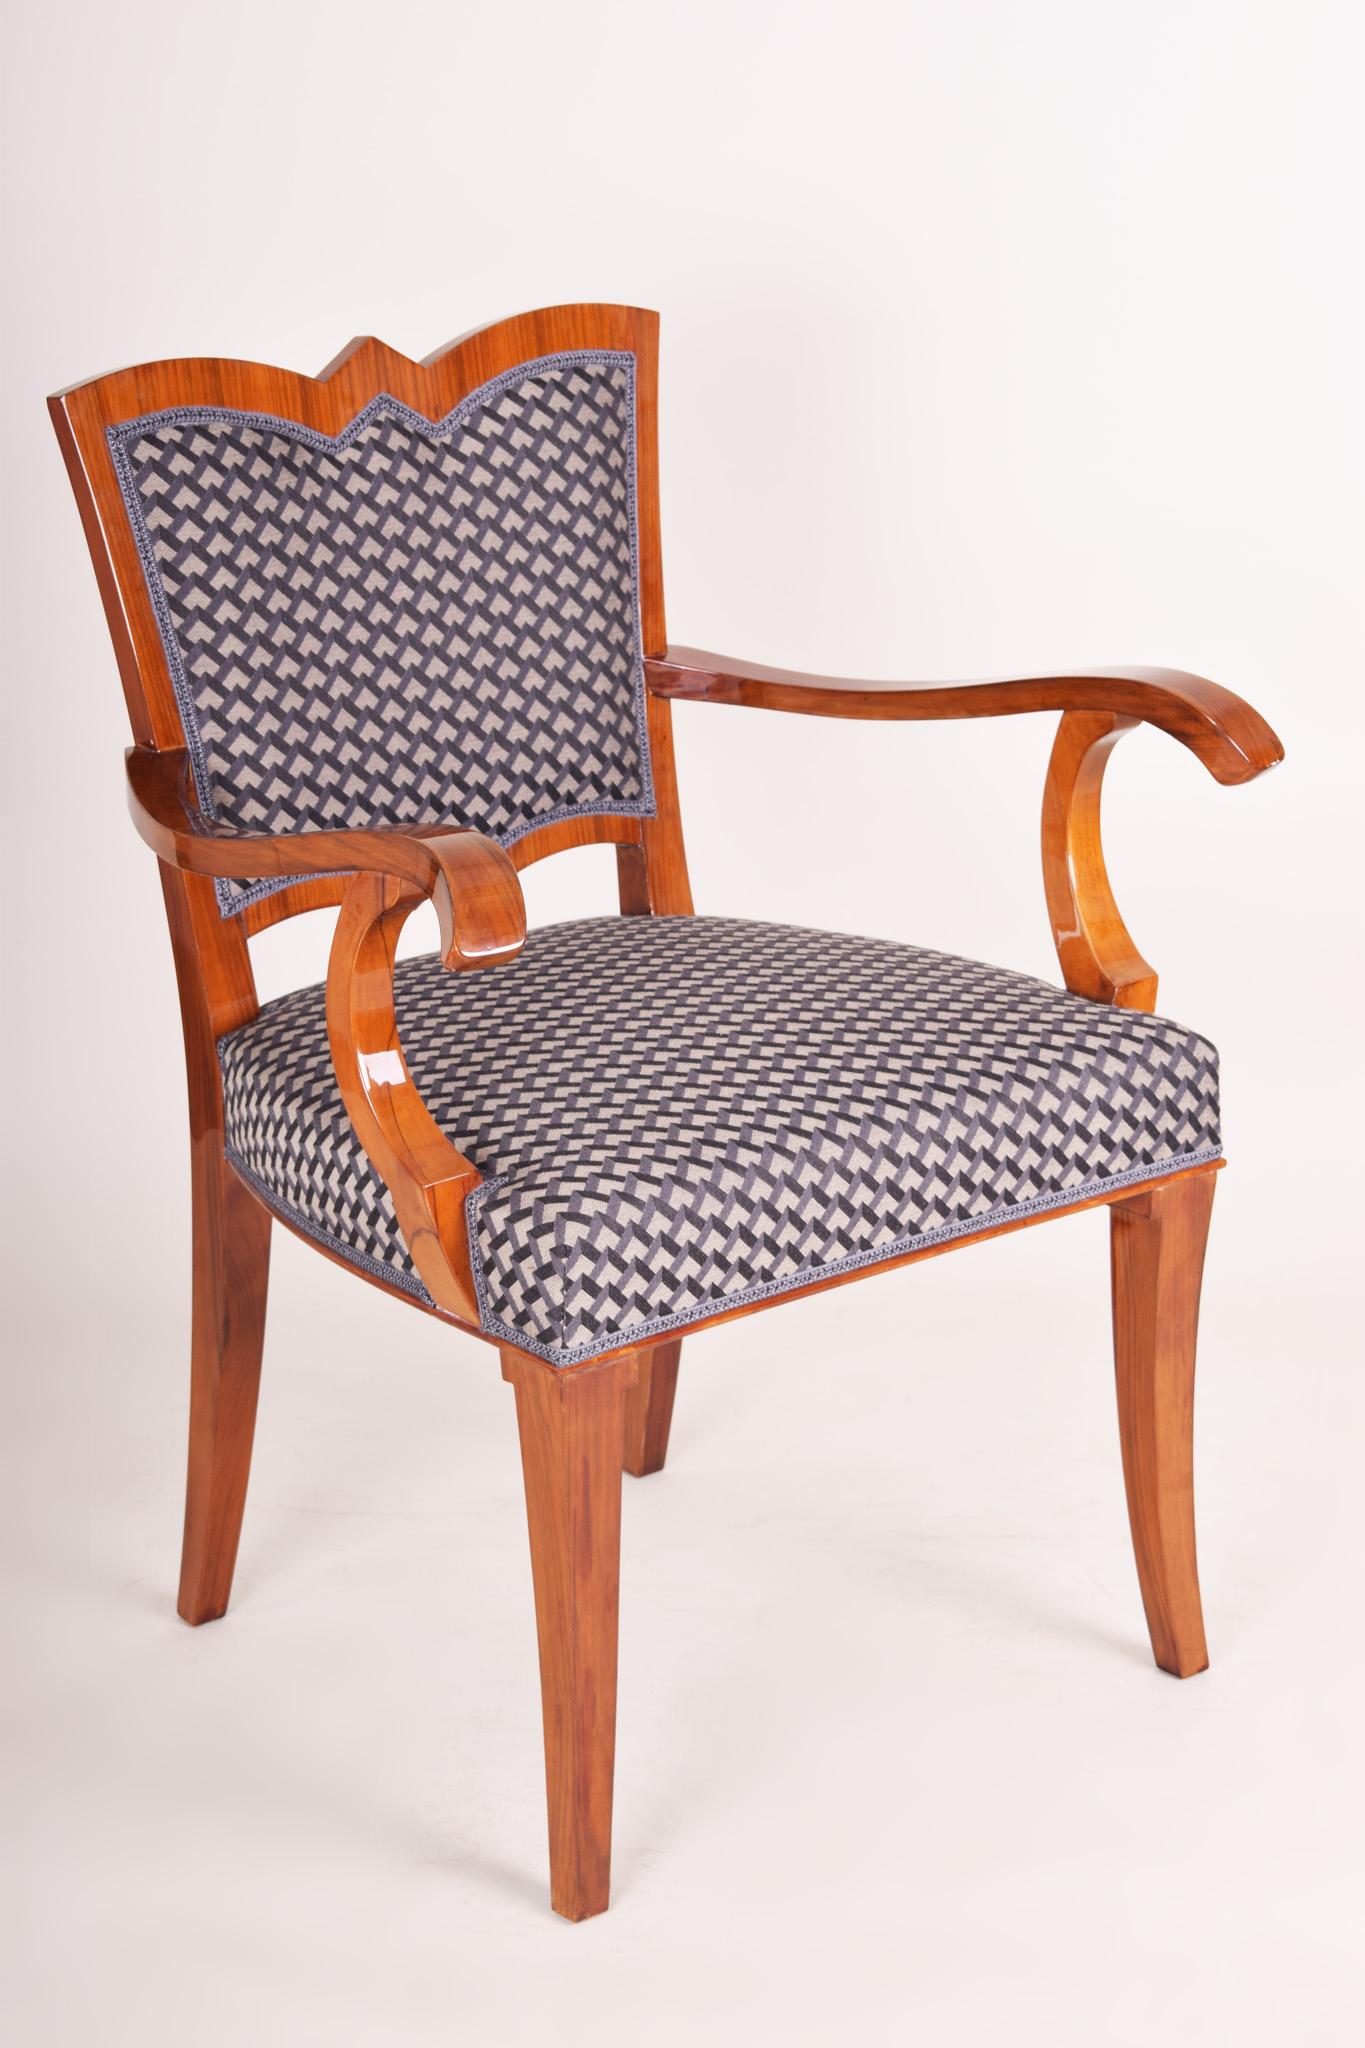 Paire de fauteuils Art Déco.
Entièrement restauré, surface rendue par un polissage à la gomme-laque. Rembourrage et tissu neufs.
Matériau : Noyer.